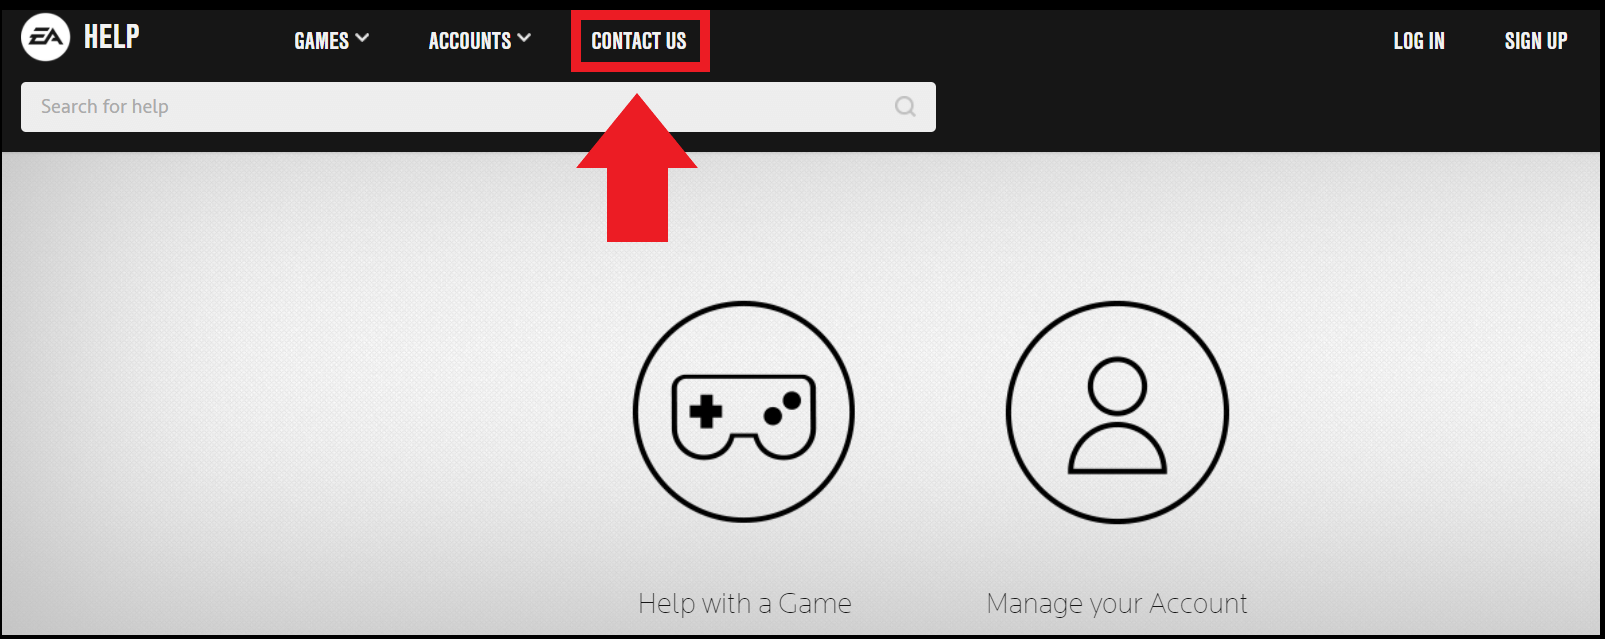 Les utilisateurs peuvent accéder au support EA via le bouton de contact sur la page d’aide EA